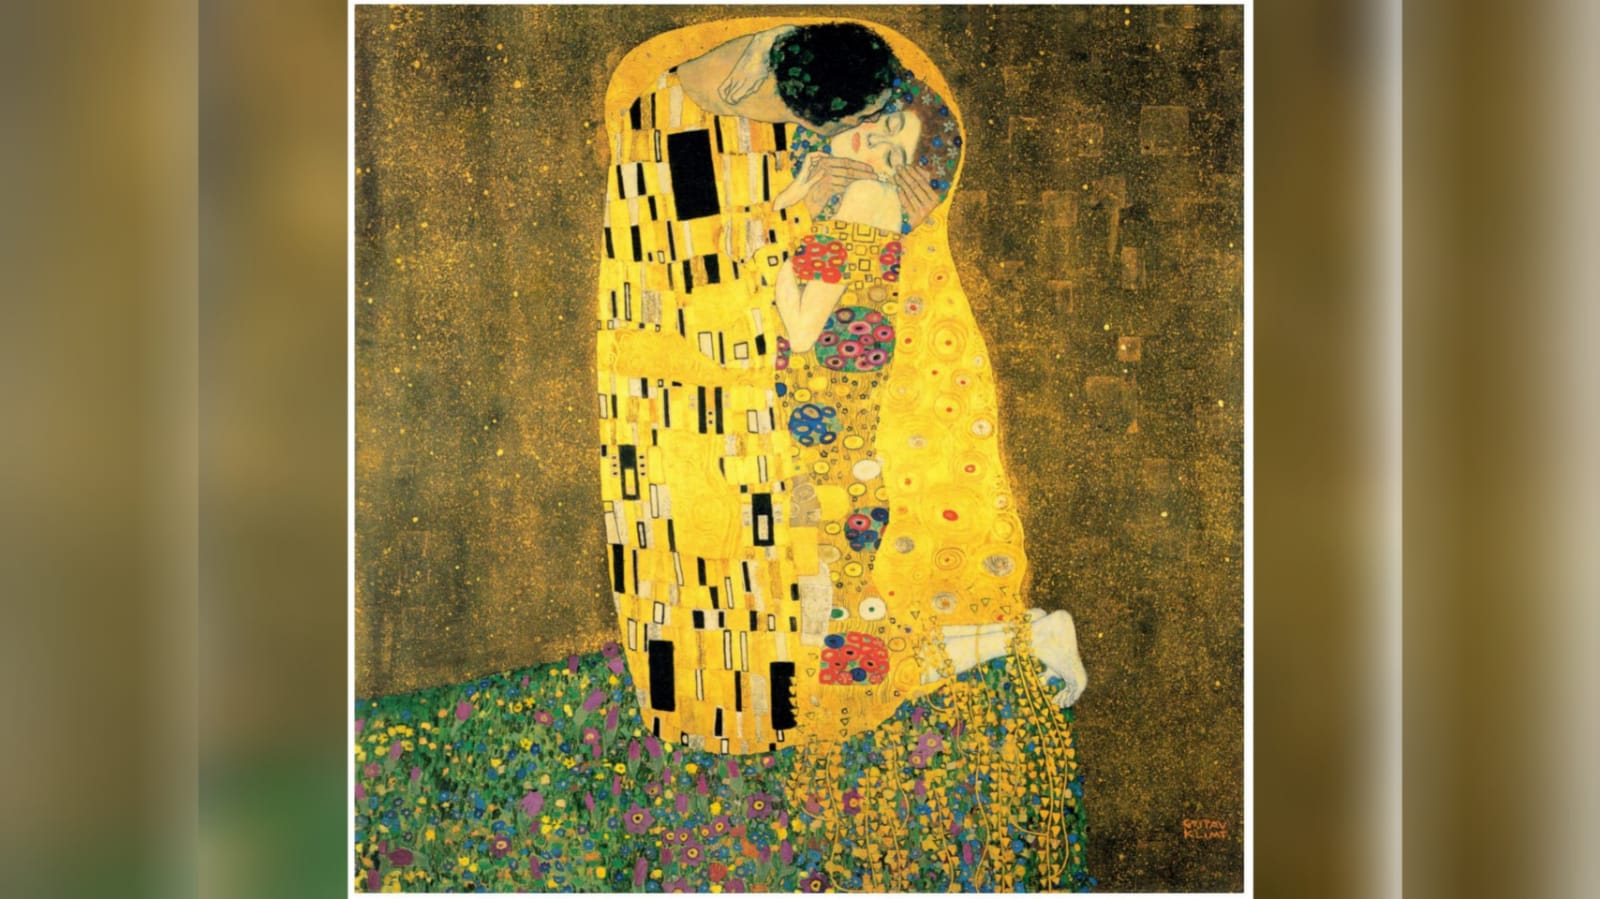 Il 6 febbraio 1918 moriva Gustav Klimt. "Il bacio", l'opera che fa sognare gli innamorati